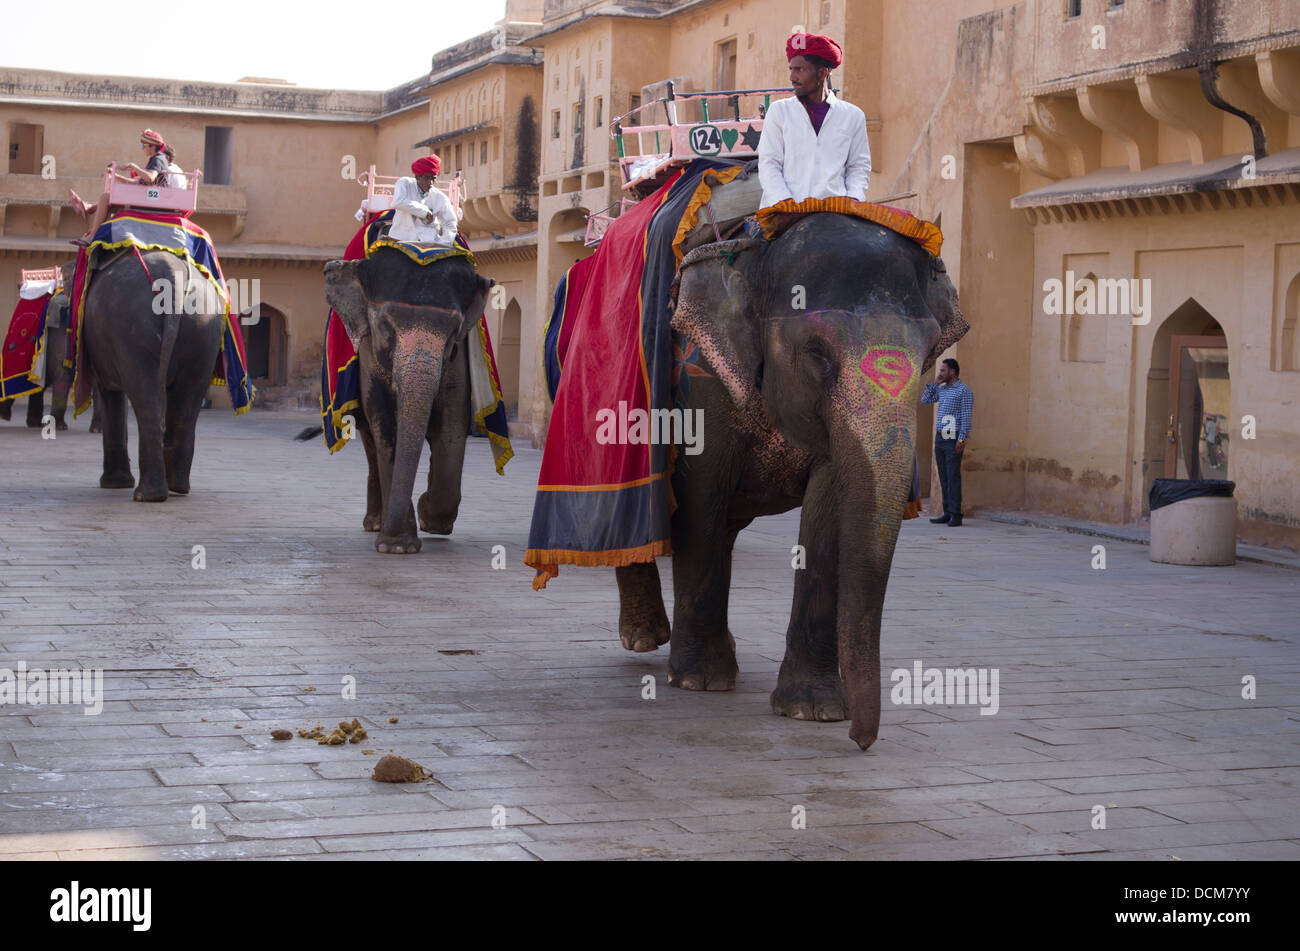 Les éléphants indiens qui prennent les touristes pour des rides jusqu'à l'Ambre ( Amer ) Fort / Palace - Jaipur, Rajasthan, Inde Banque D'Images